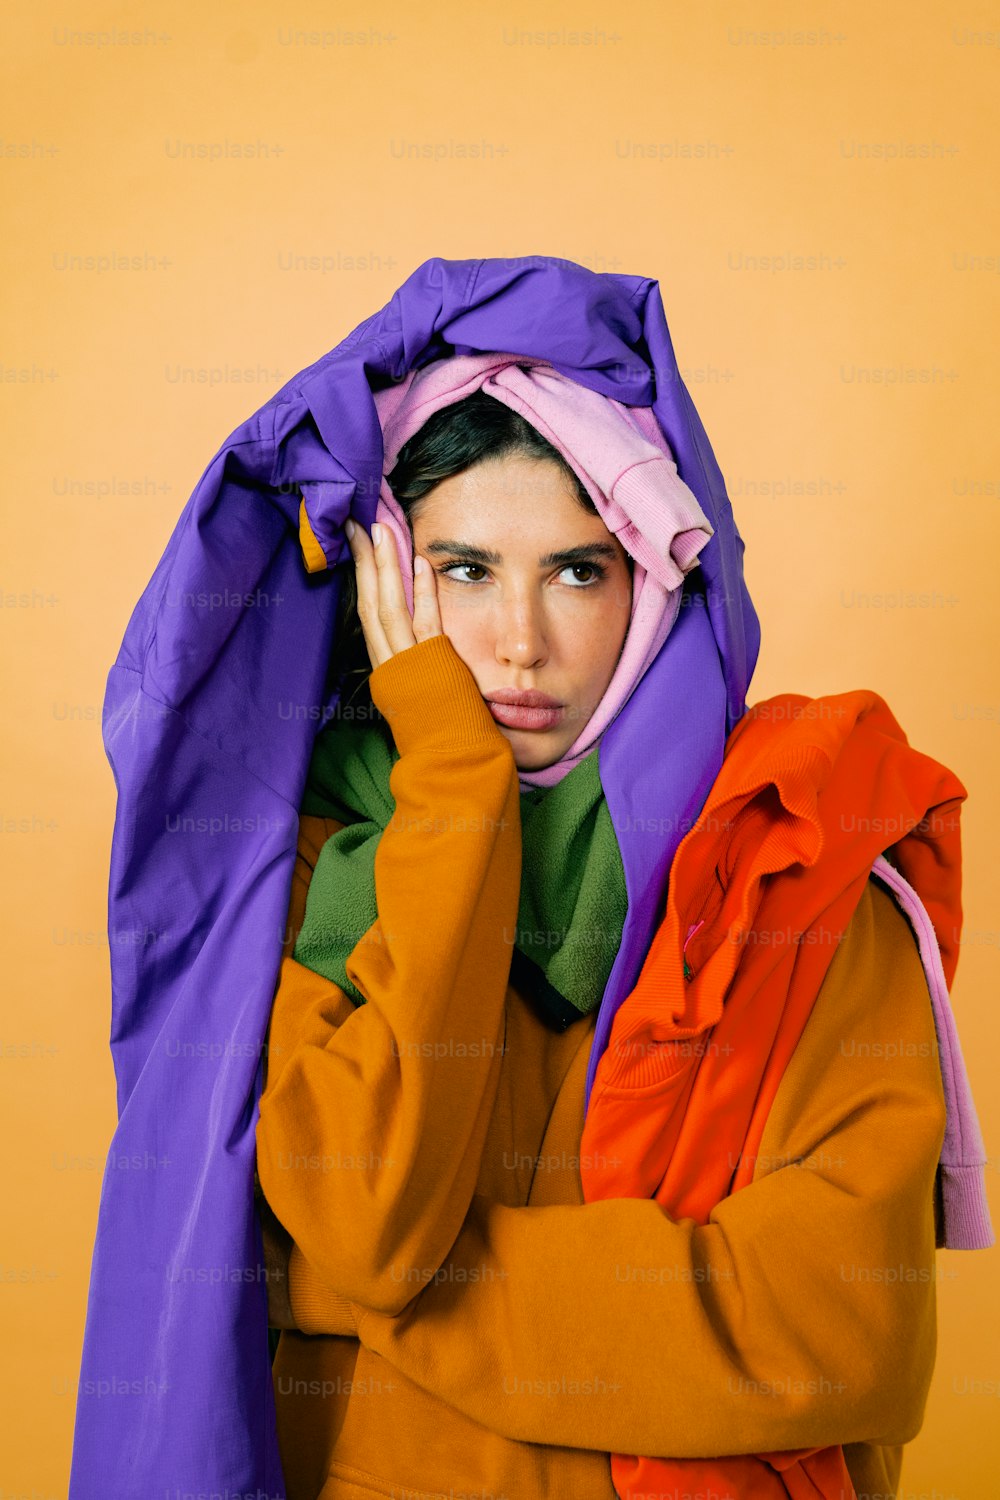 보라색과 주황색 재킷으로 얼굴을 가린 여성